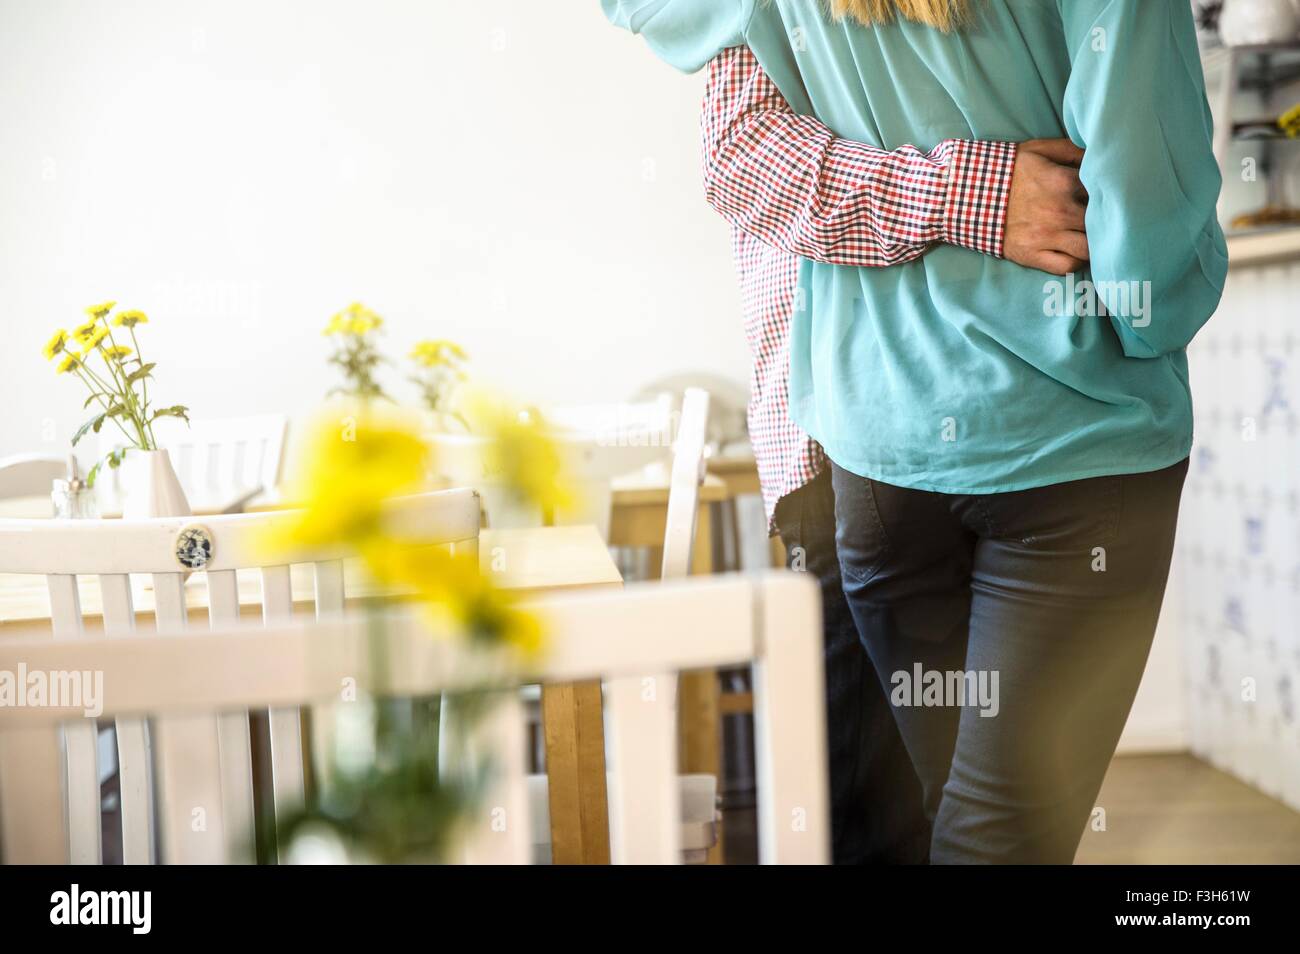 Vue arrière de jeunes couples mid section standing in cafe, le bras autour de la taille Banque D'Images